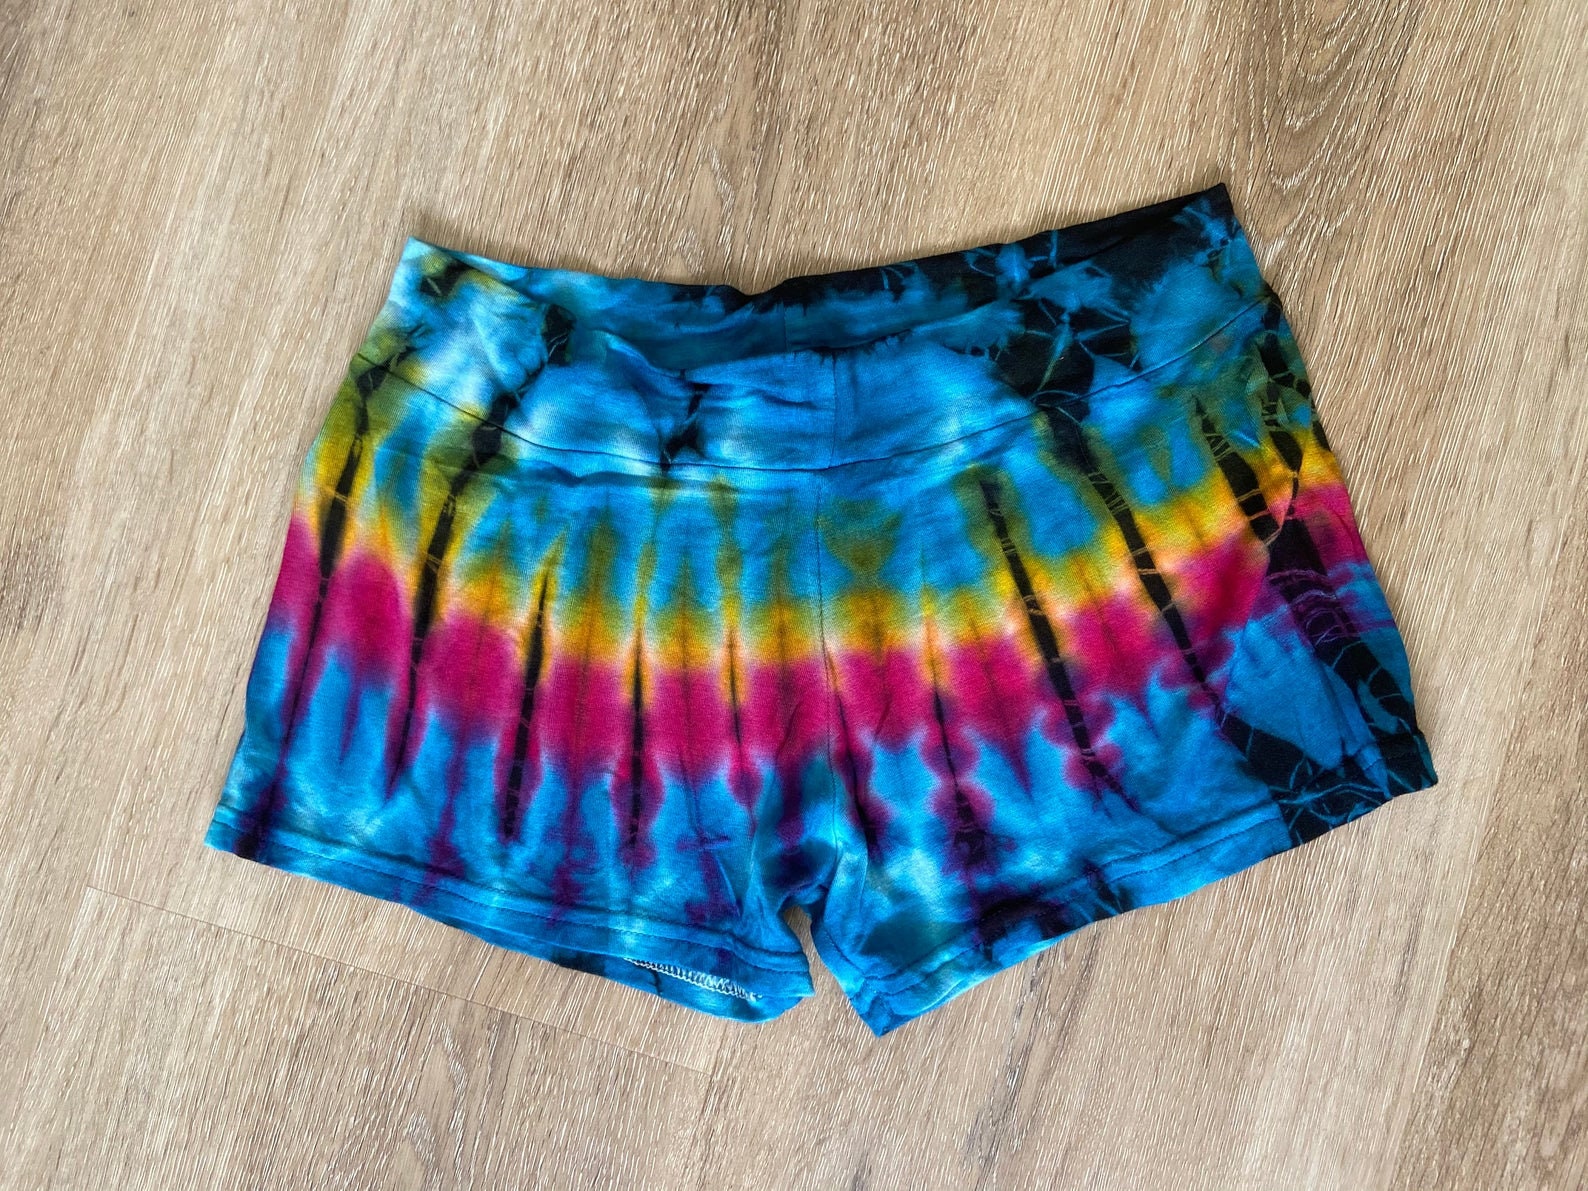 Tie dye shorts spandex shorts festival shorts yoga shorts | Etsy